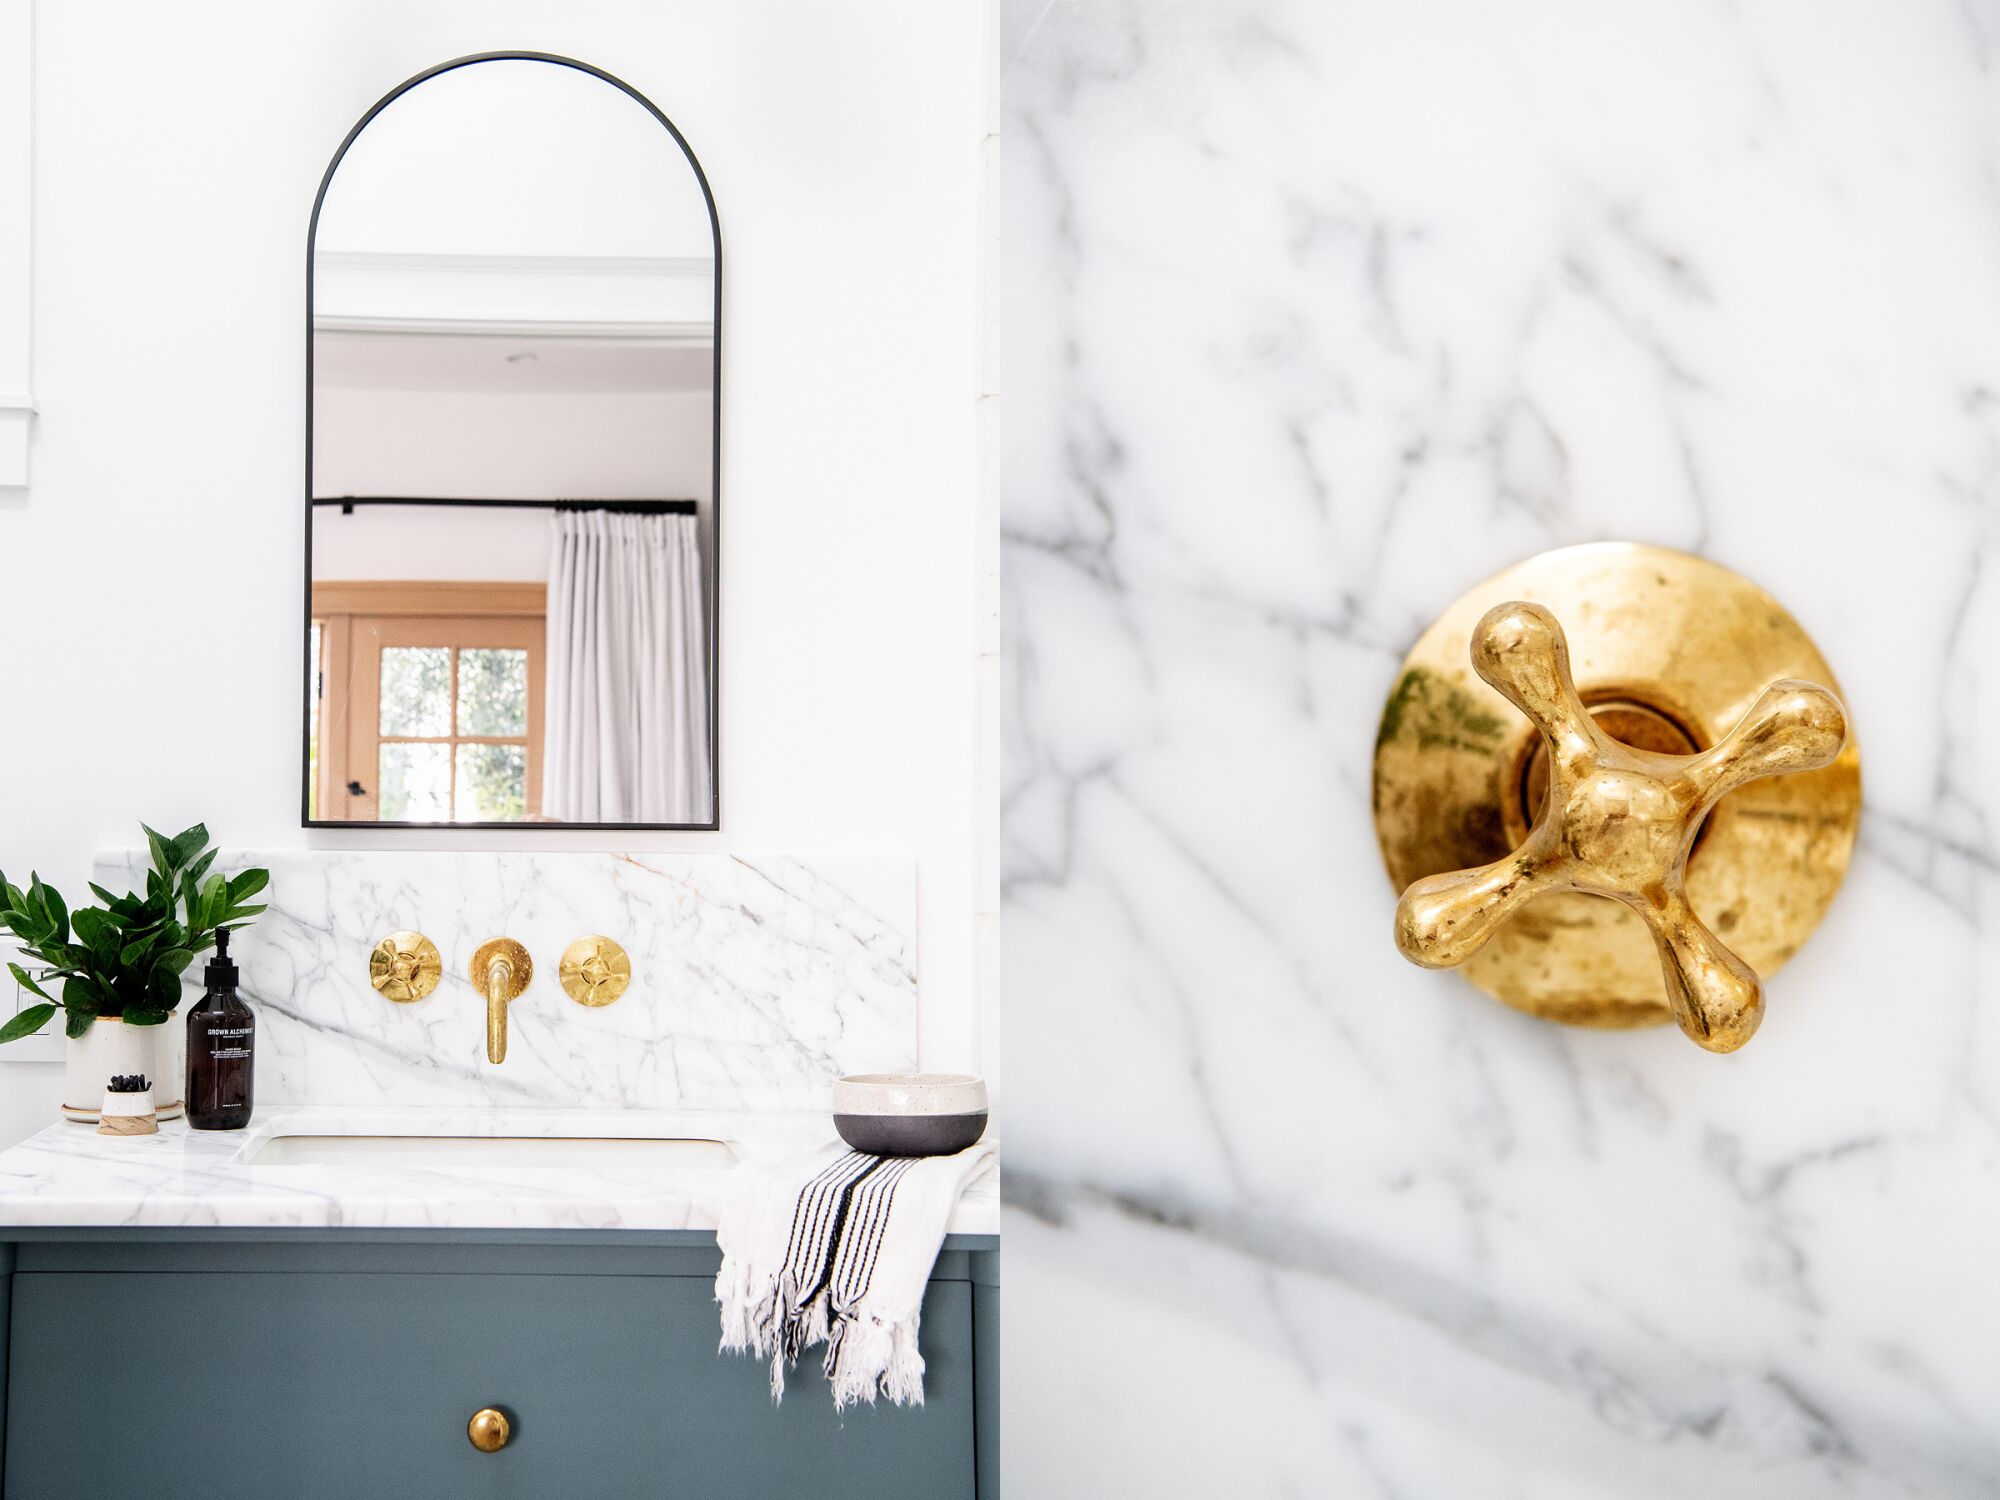 Dos imágenes una al lado de la otra de un lavabo de baño, a la izquierda, y una llave de agua contra un protector contra salpicaduras de mármol, a la derecha.